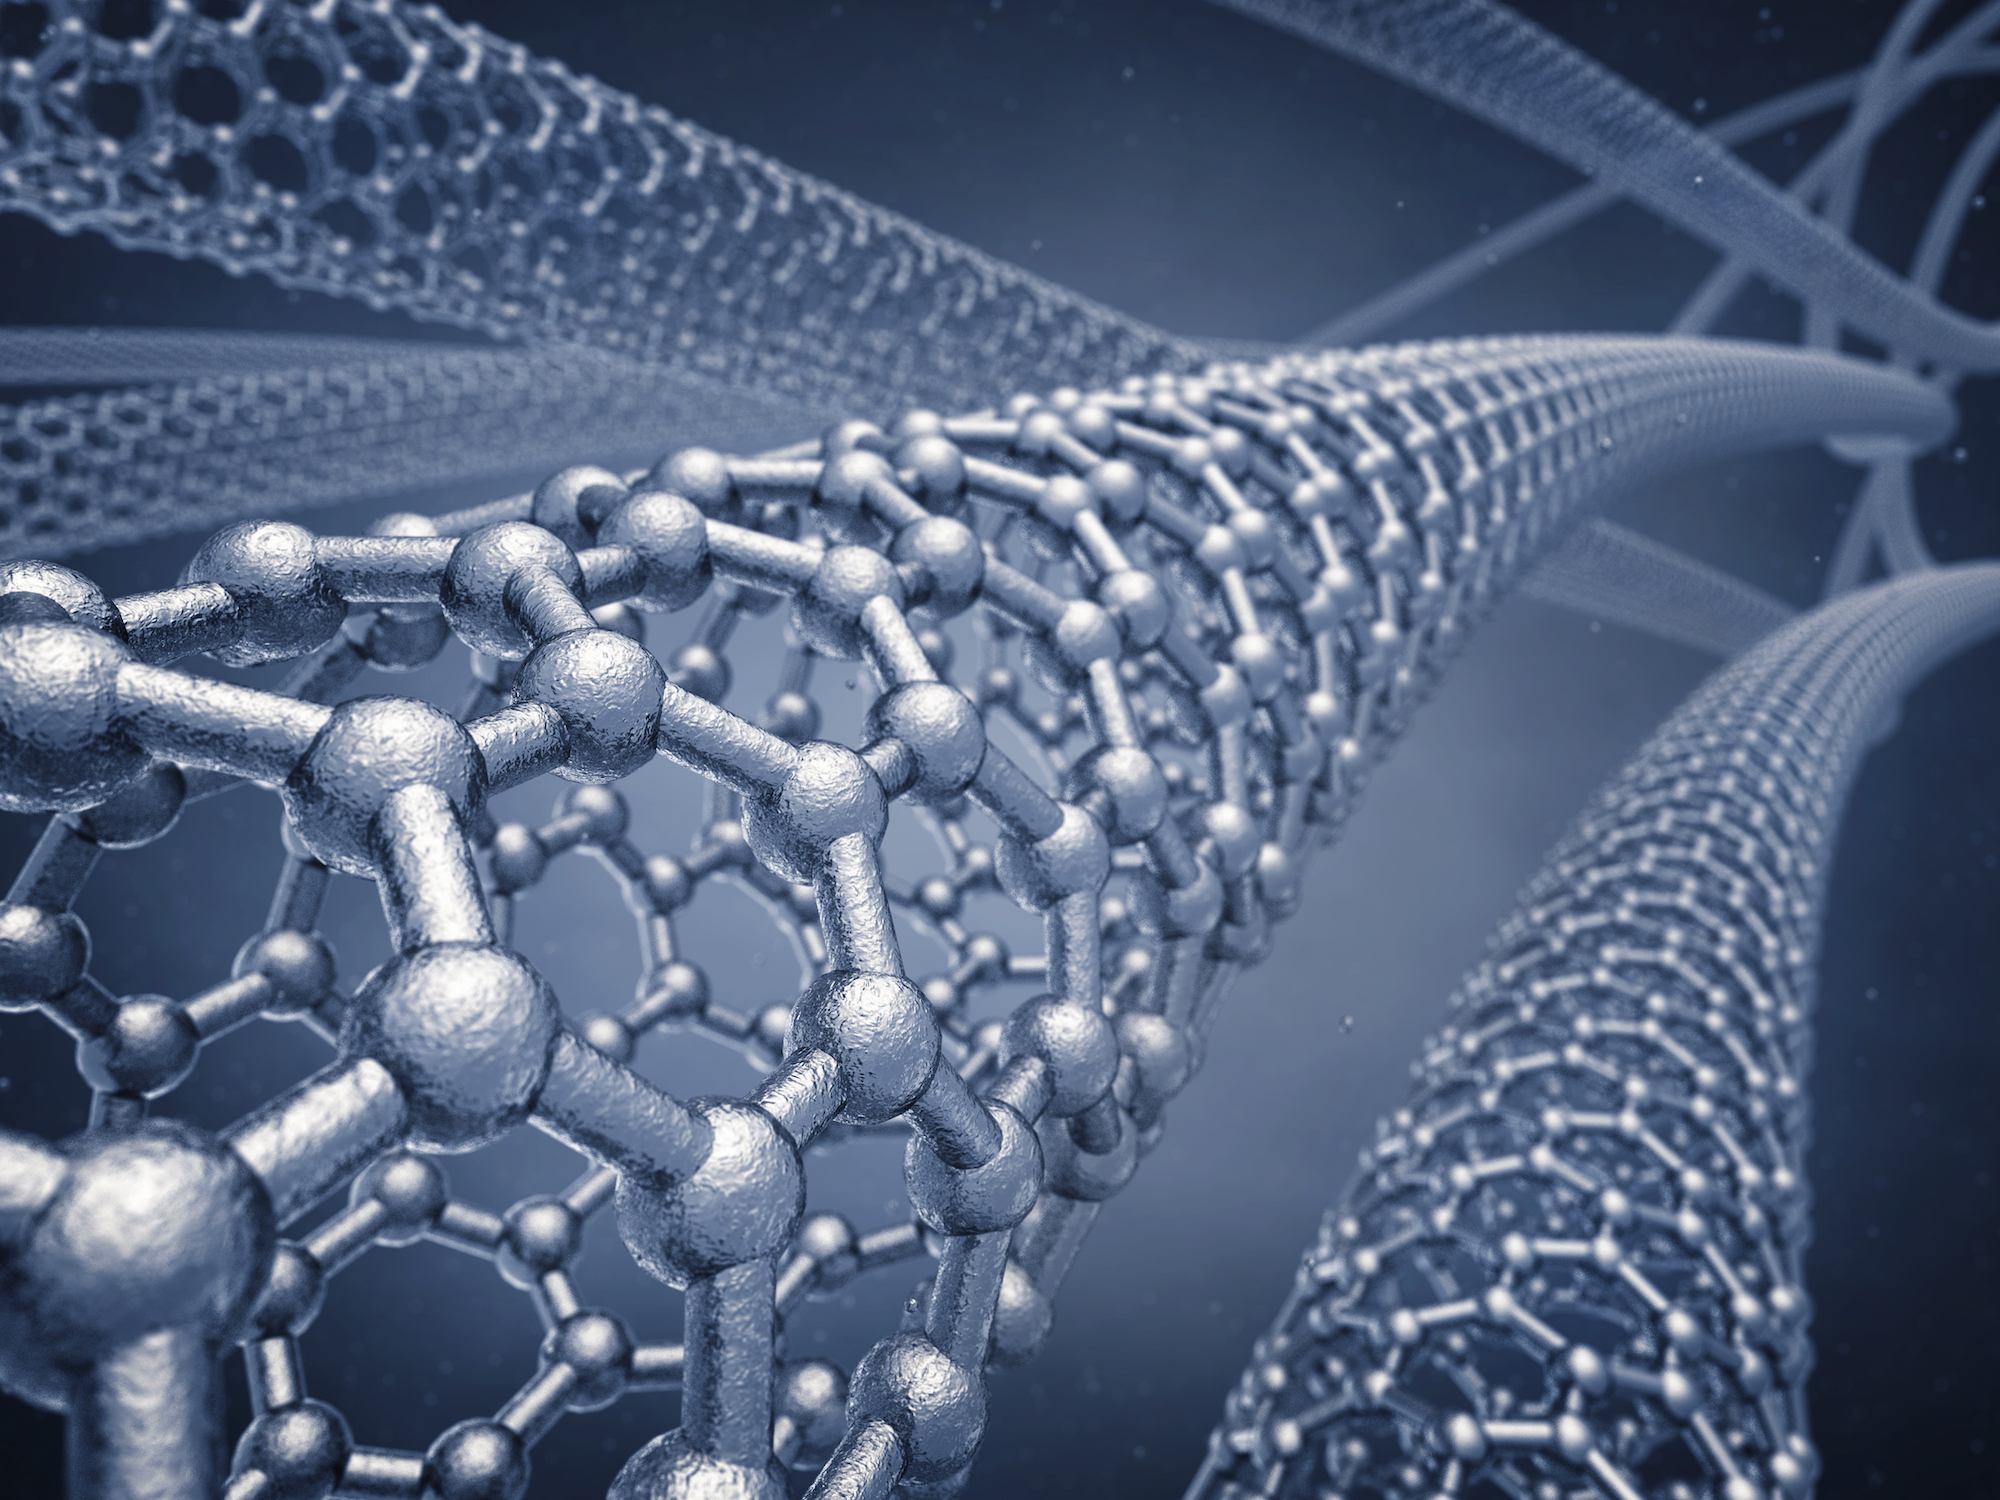 En contrôlant la création de nanorouleaux d’oxyde de graphène, des chercheurs américains espèrent développer des membranes de filtration d’eau légères et bon marché. © nobeastsofierce, Shutterstock